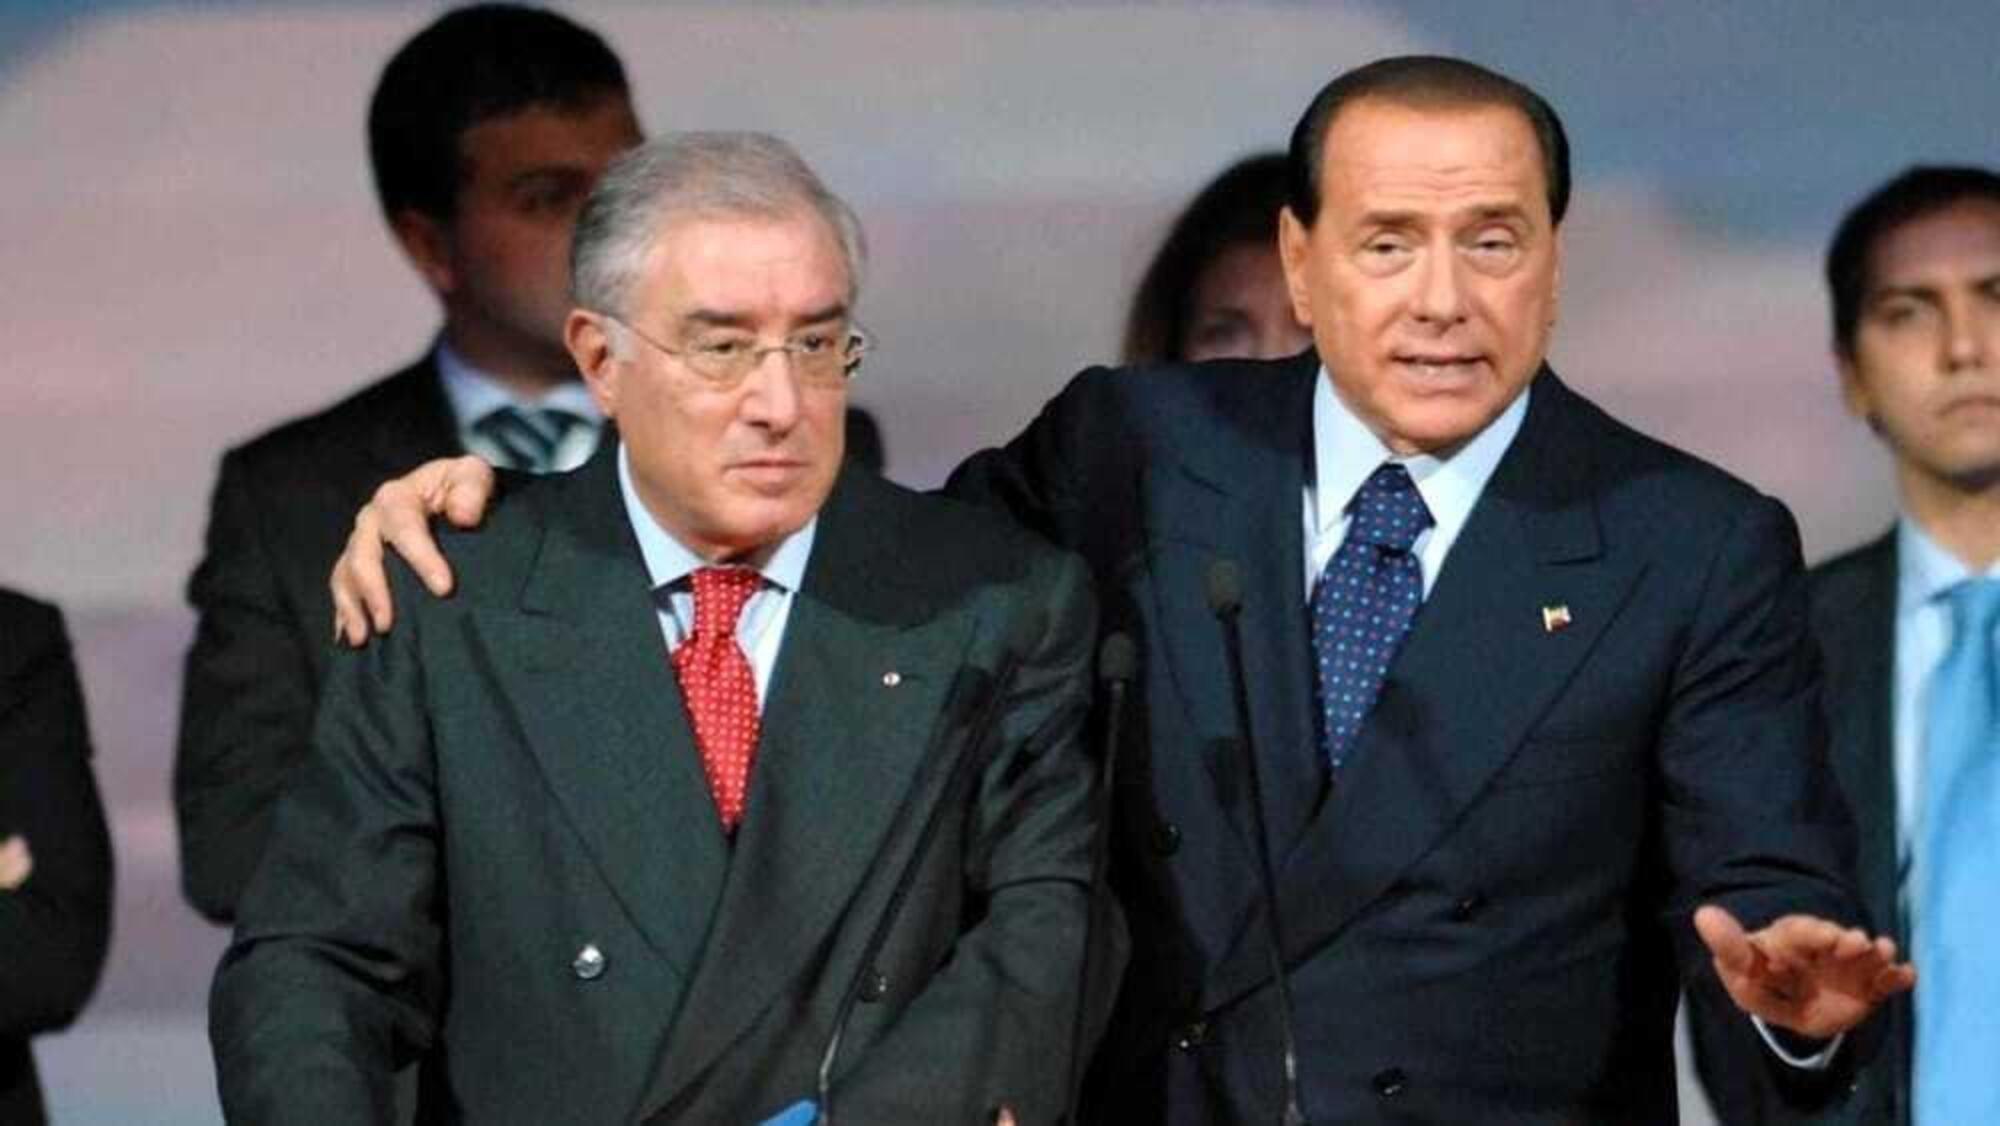 Marcello Dell'Utri e Silvio Berlusconi